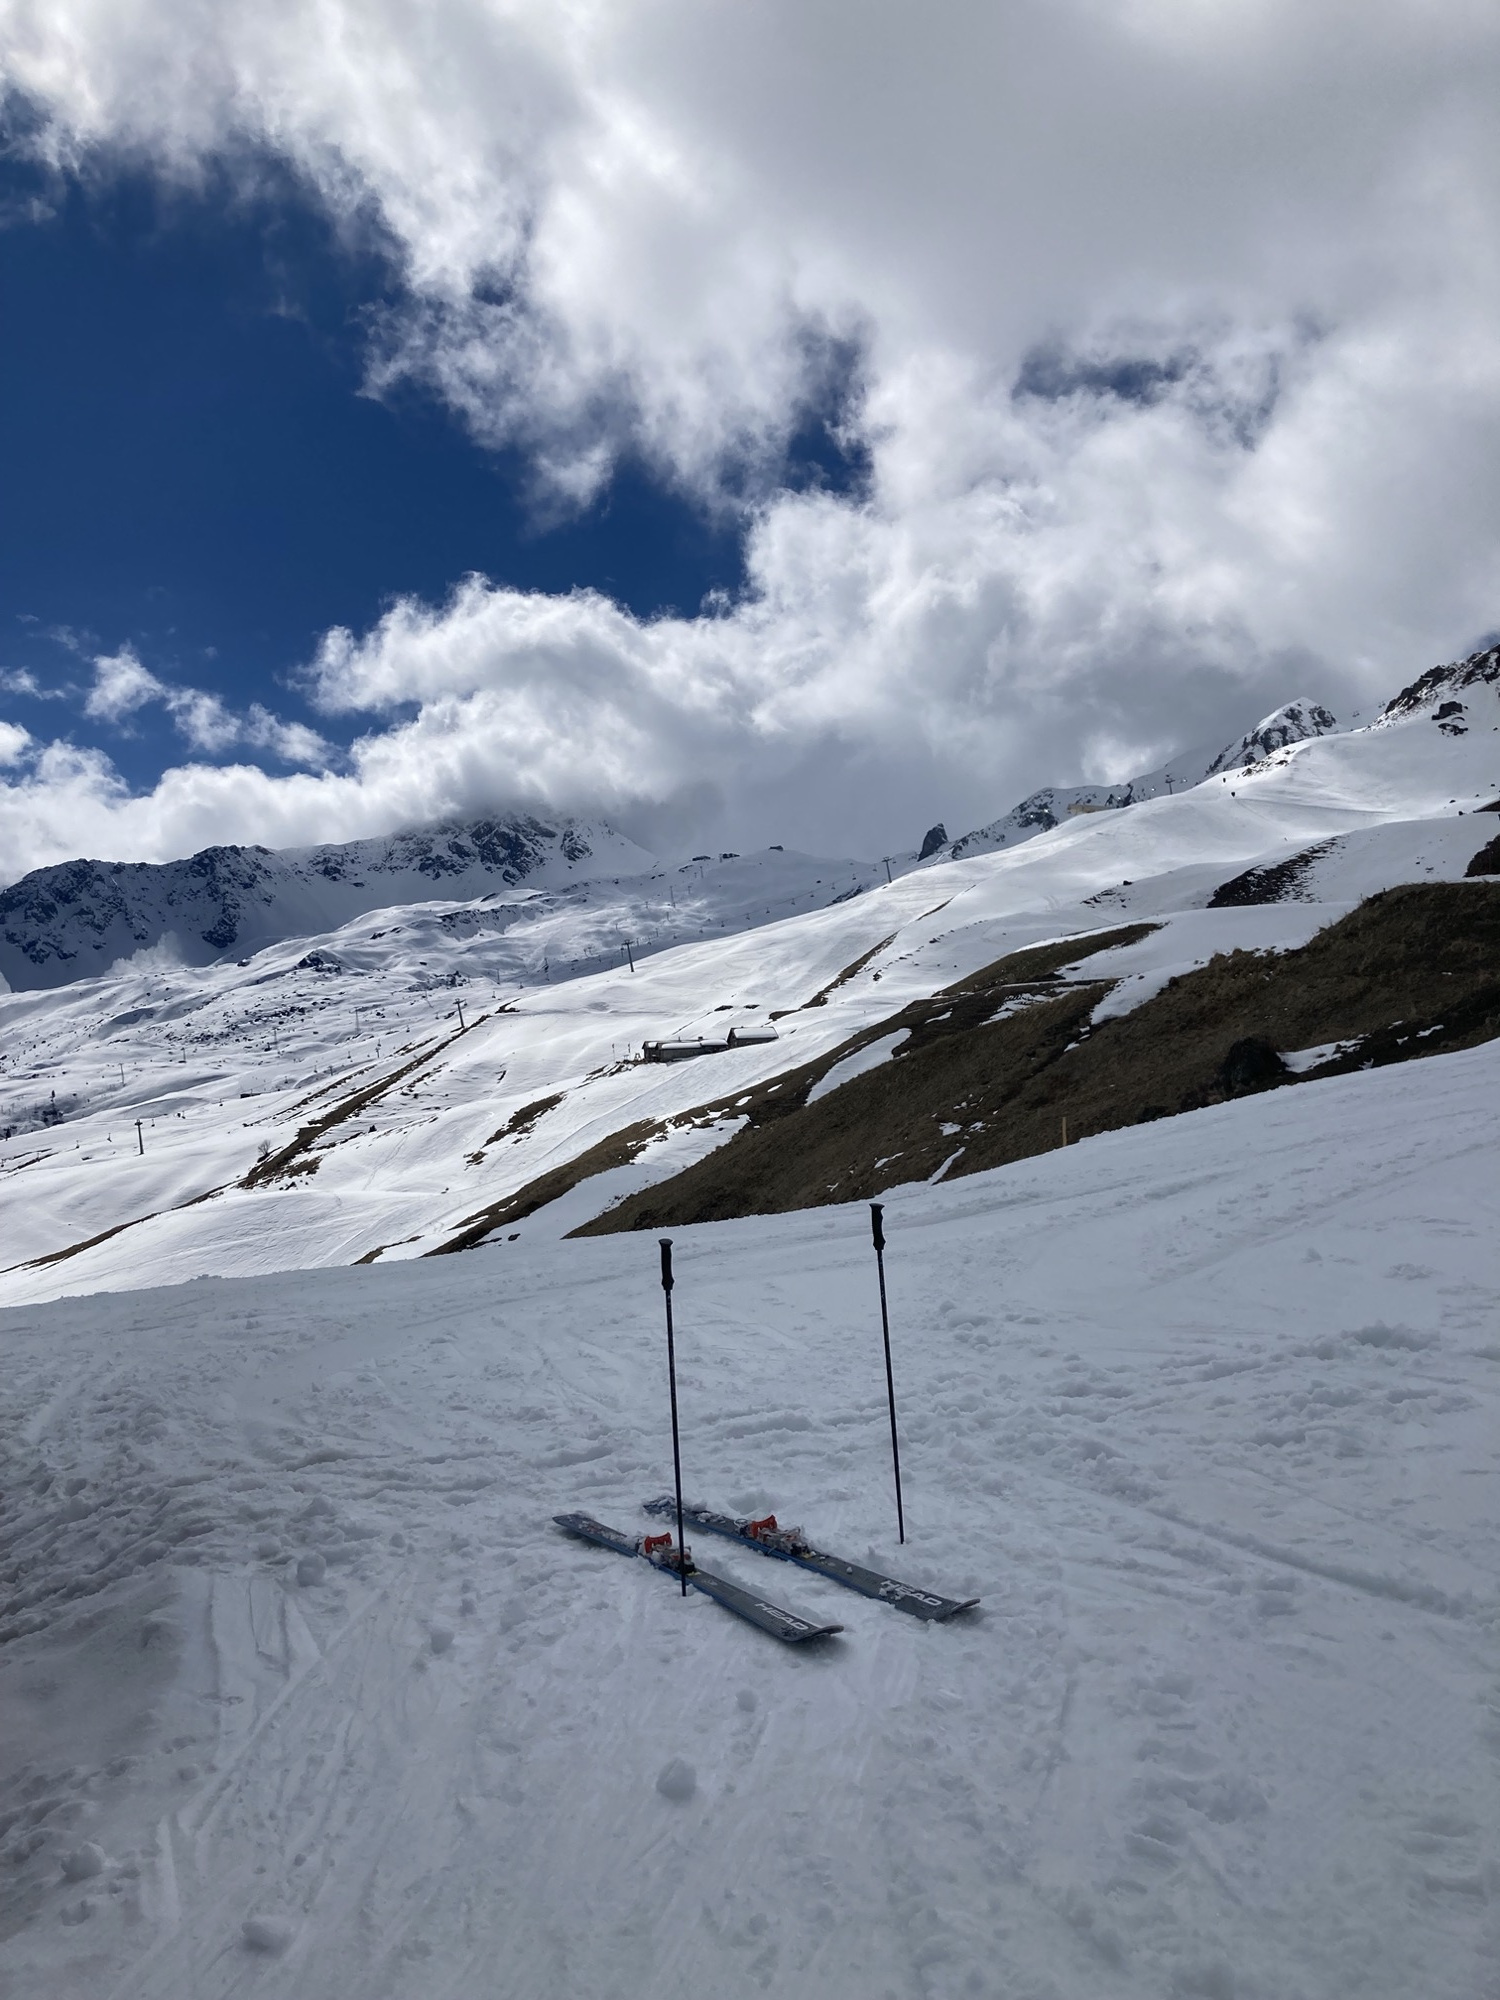 Skigebiet-Idylle, im Vordergrund ein geparktes Paar Ski mit daneben in den Schnee gesteckten Skistöcken, im Hintergrund sonnenbeschiene Skipisten unter blauem Himmel